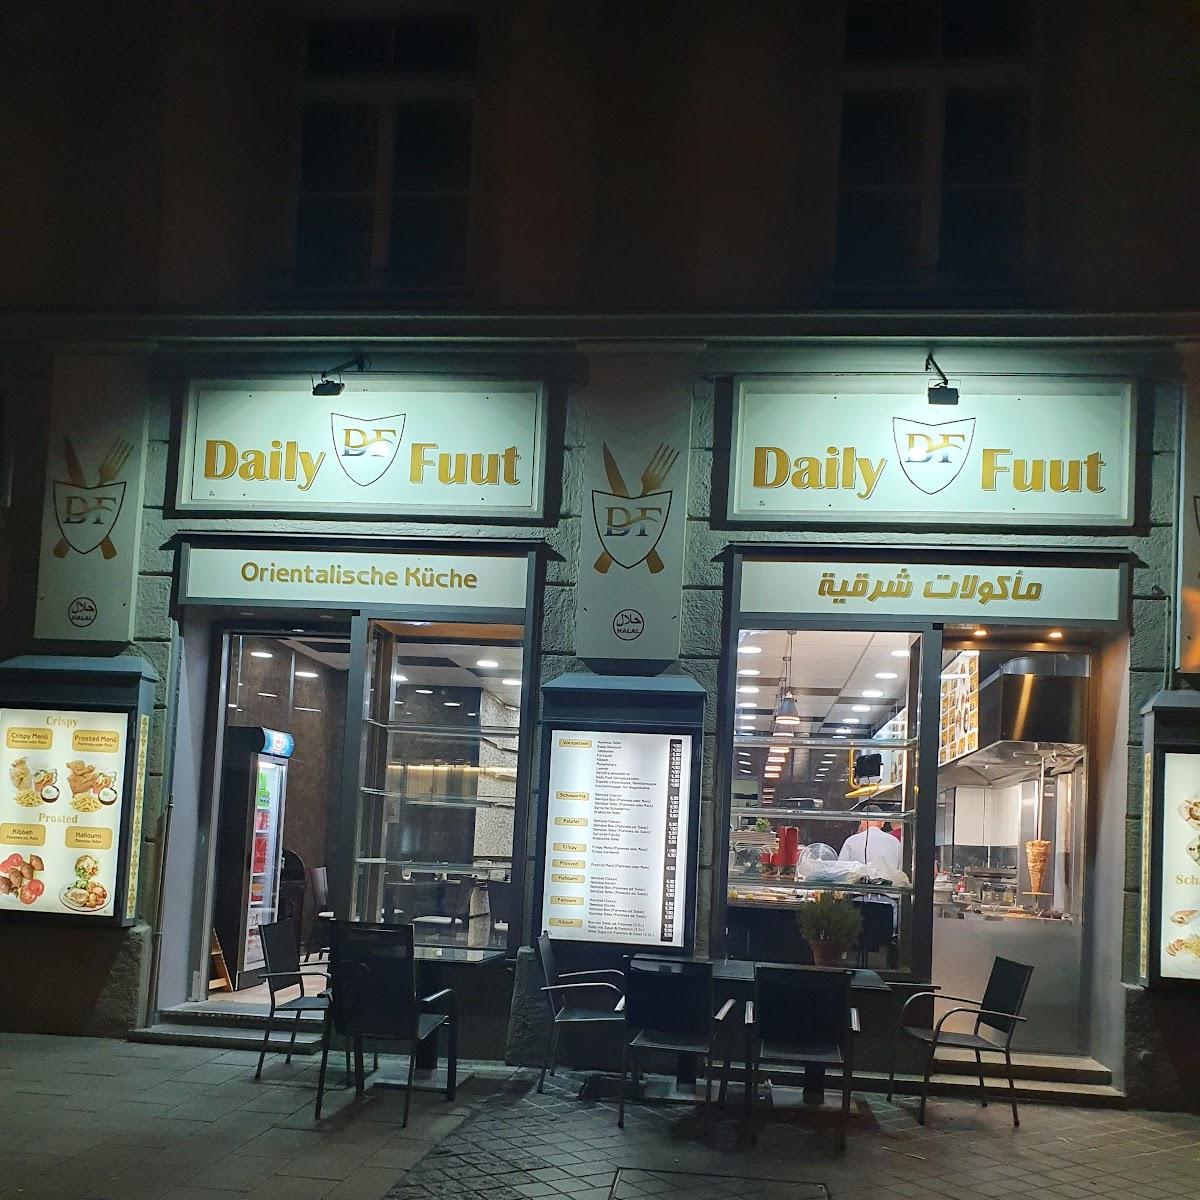 Restaurant "Daily Fuut" in München